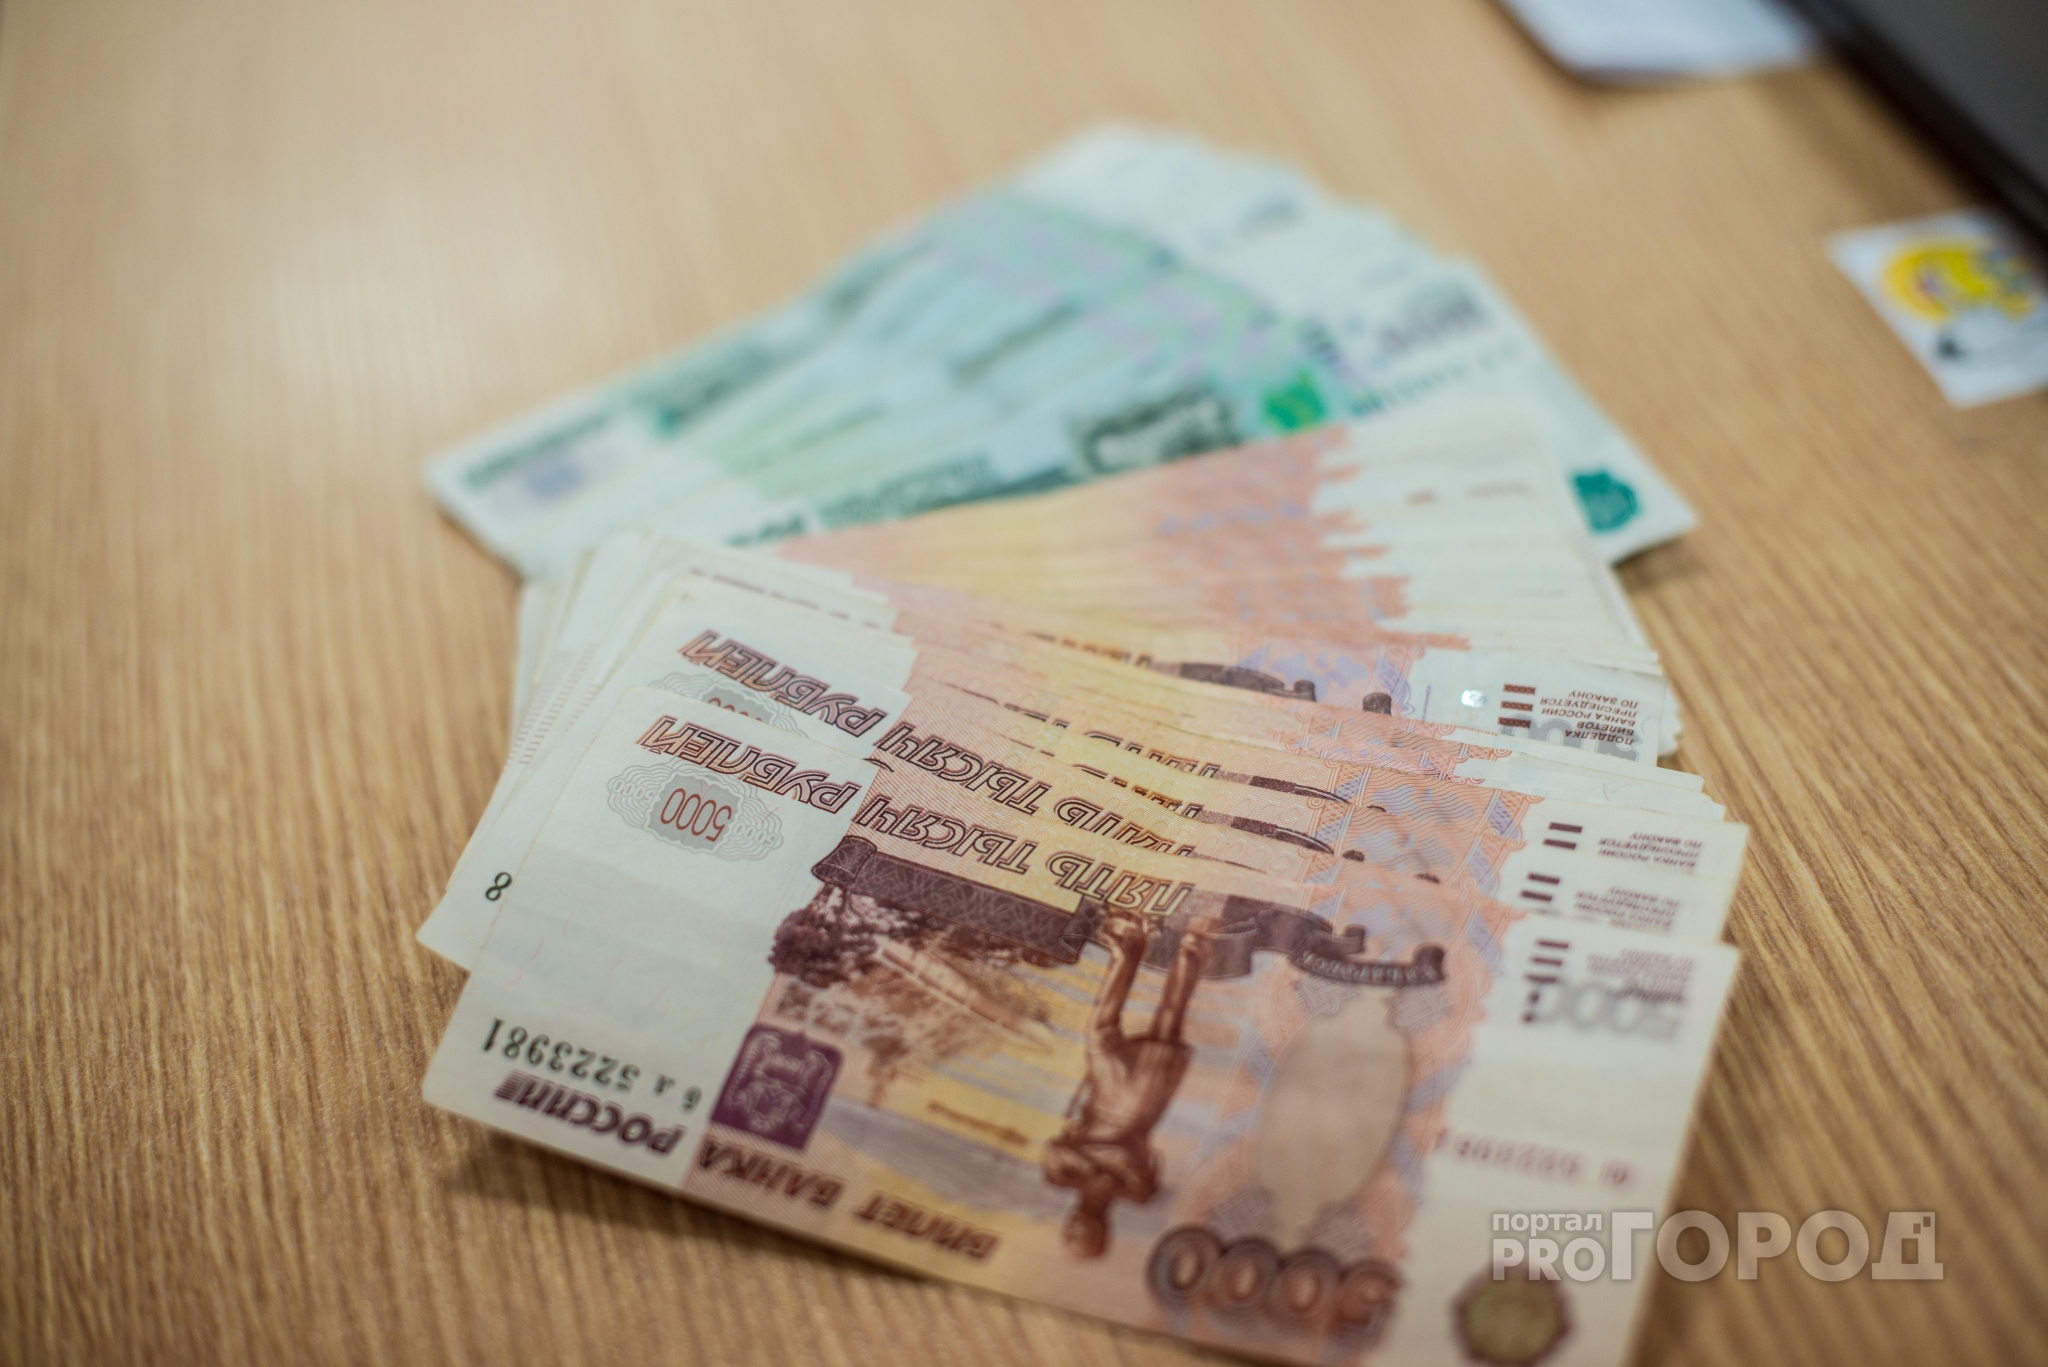 Йошкаролинка отдала около полумиллиона рублей лже-сотруднику банка